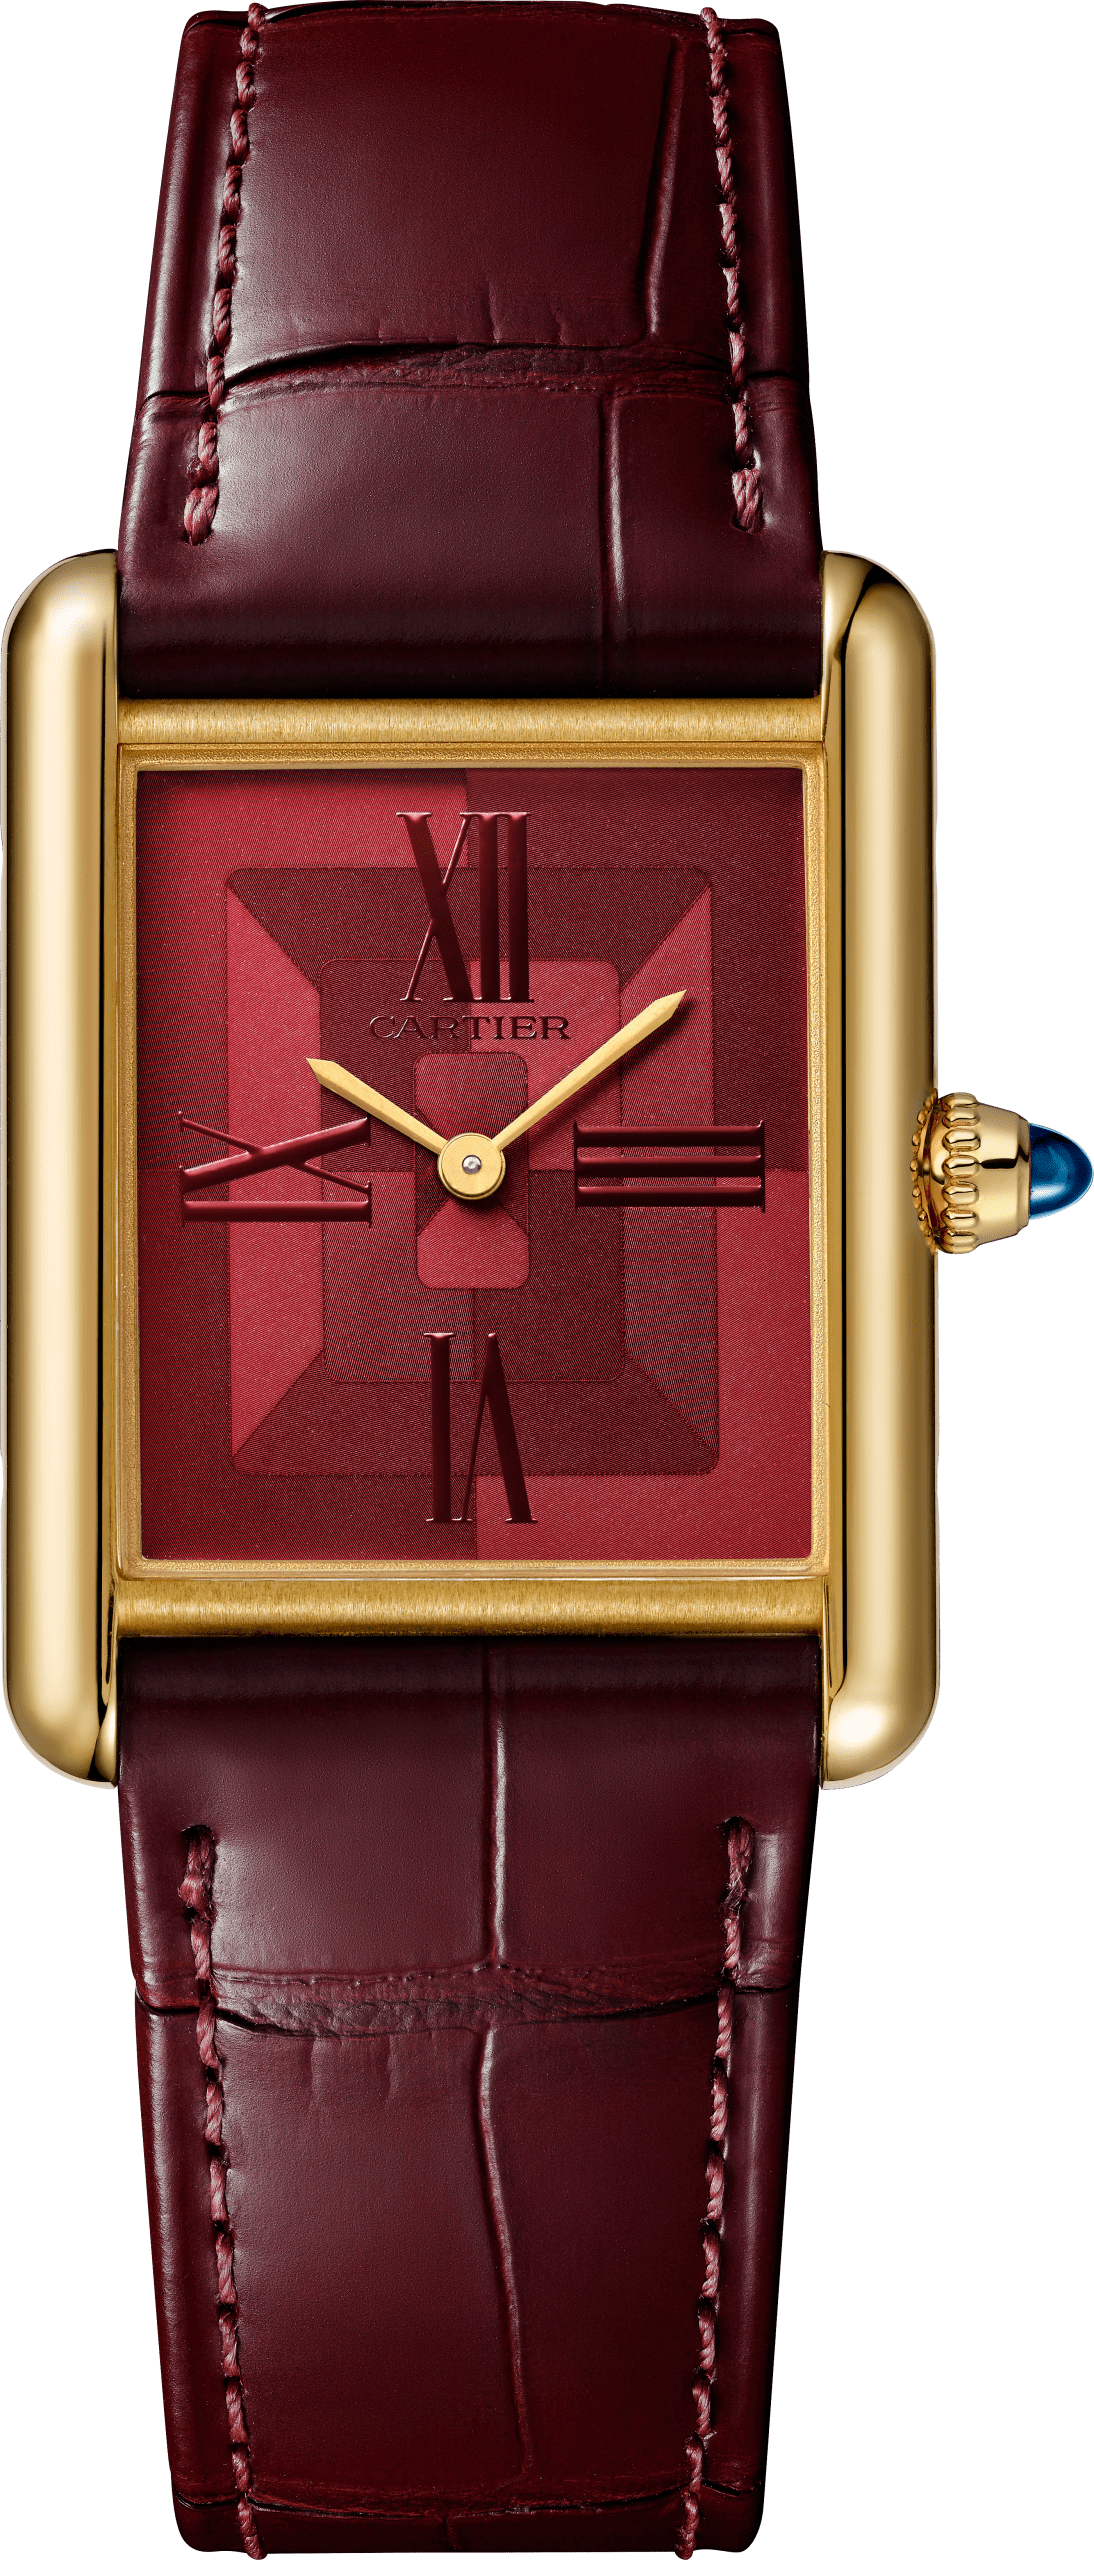 NuovoTank Louis Cartier in oro giallo con quadrante artistico rosso